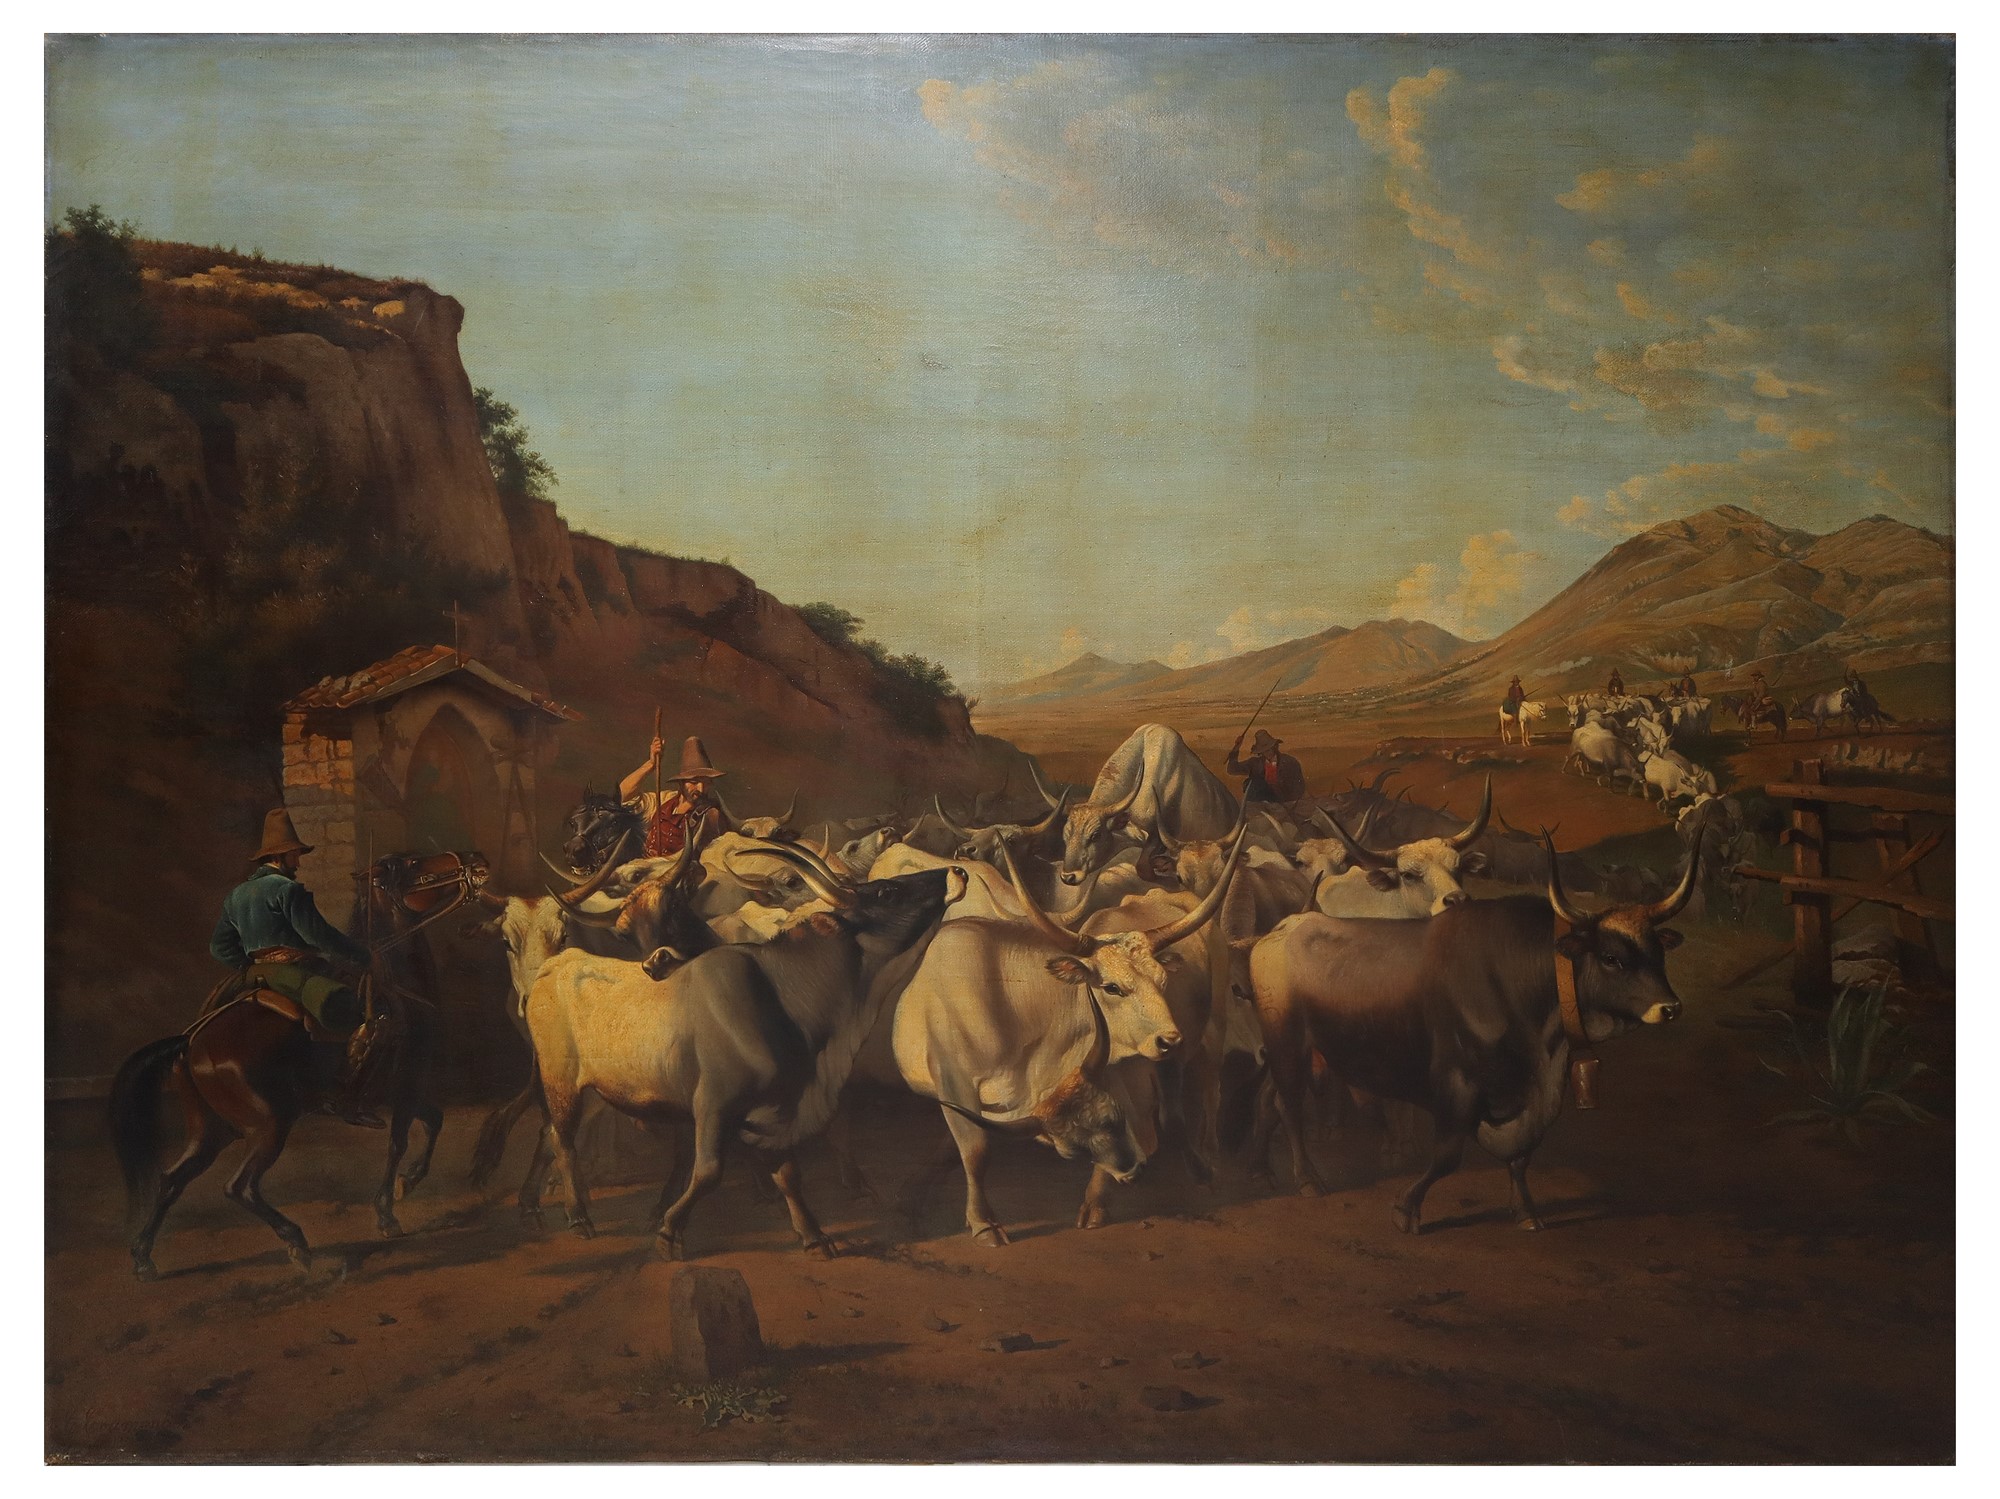 Charles Coumont (Belgio 1822-Belgio 1889) - Herd of oxen with herdsman on horseback, nineteenth cen